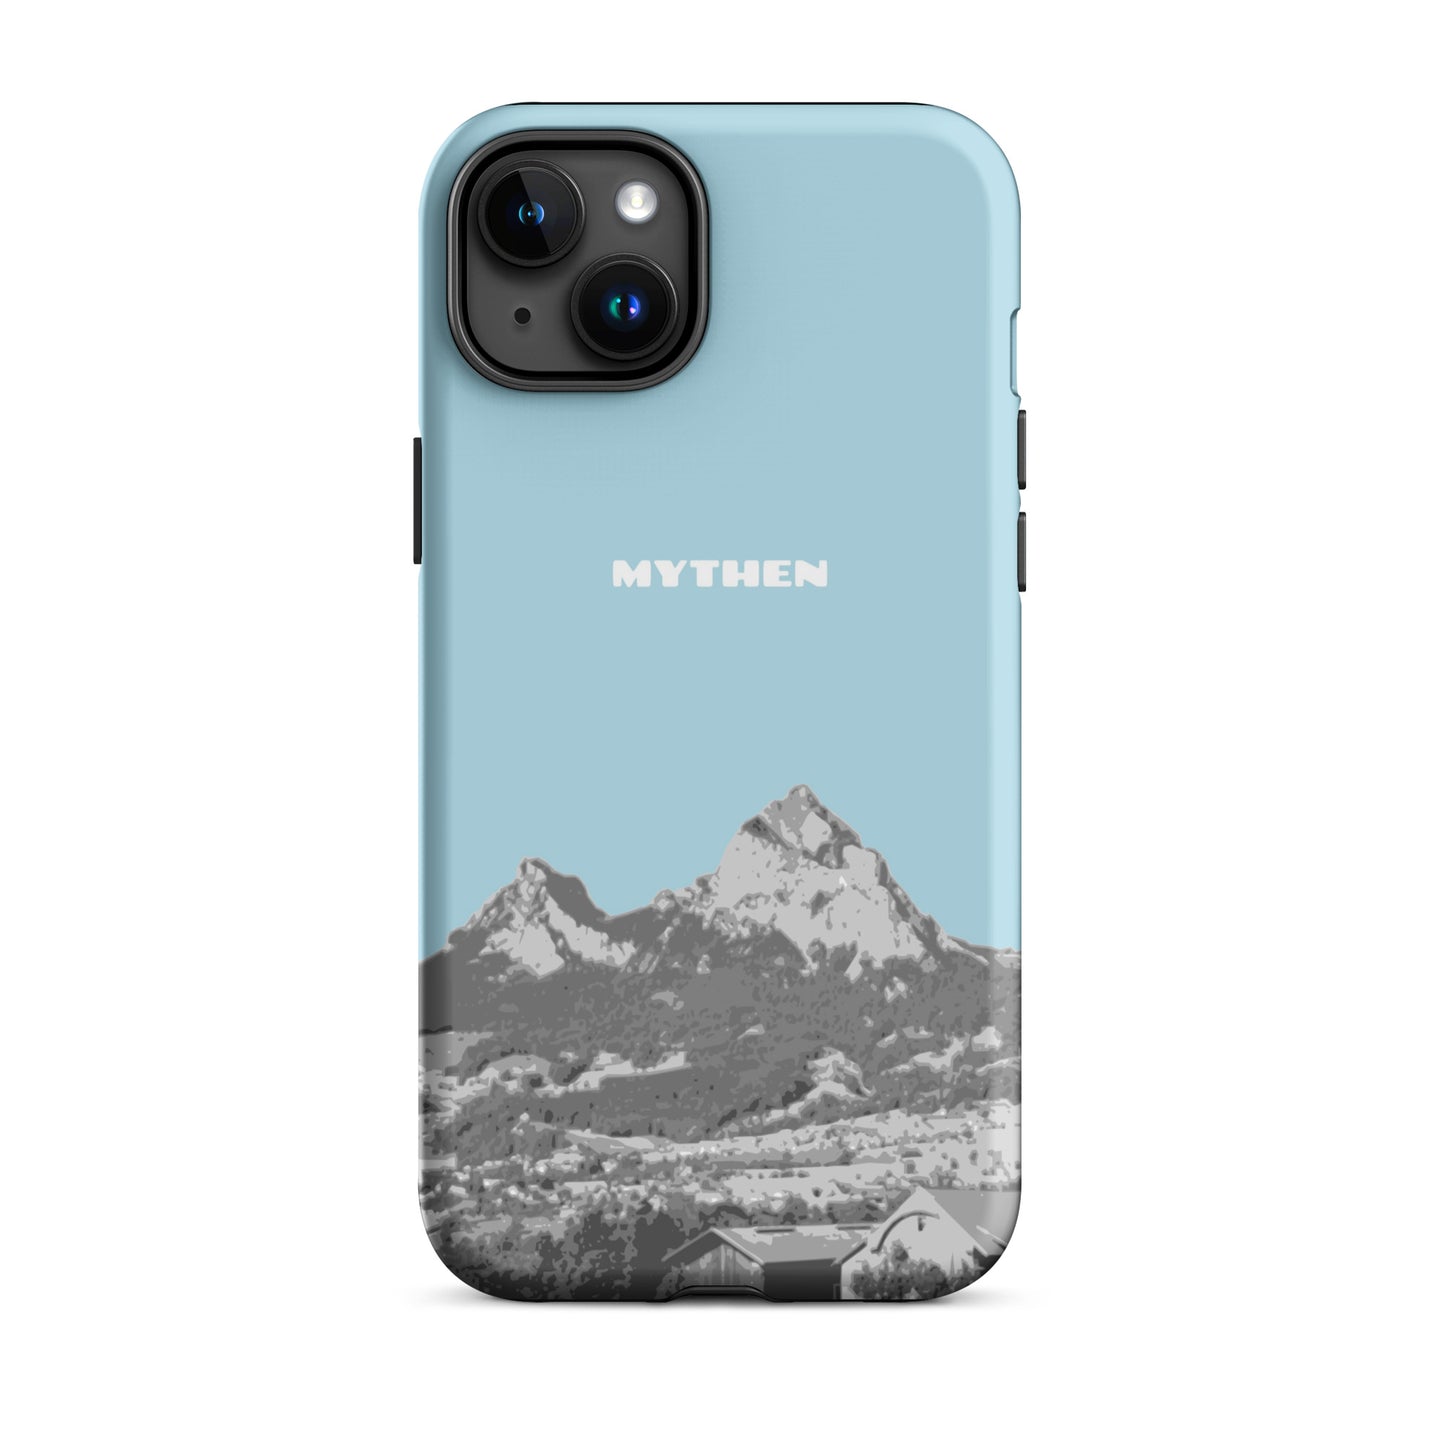 Hülle für das iPhone 15 Plus von Apple in der Farbe Hellblau, die den Grossen Mythen und den Kleinen Mythen bei Schwyz zeigt. 